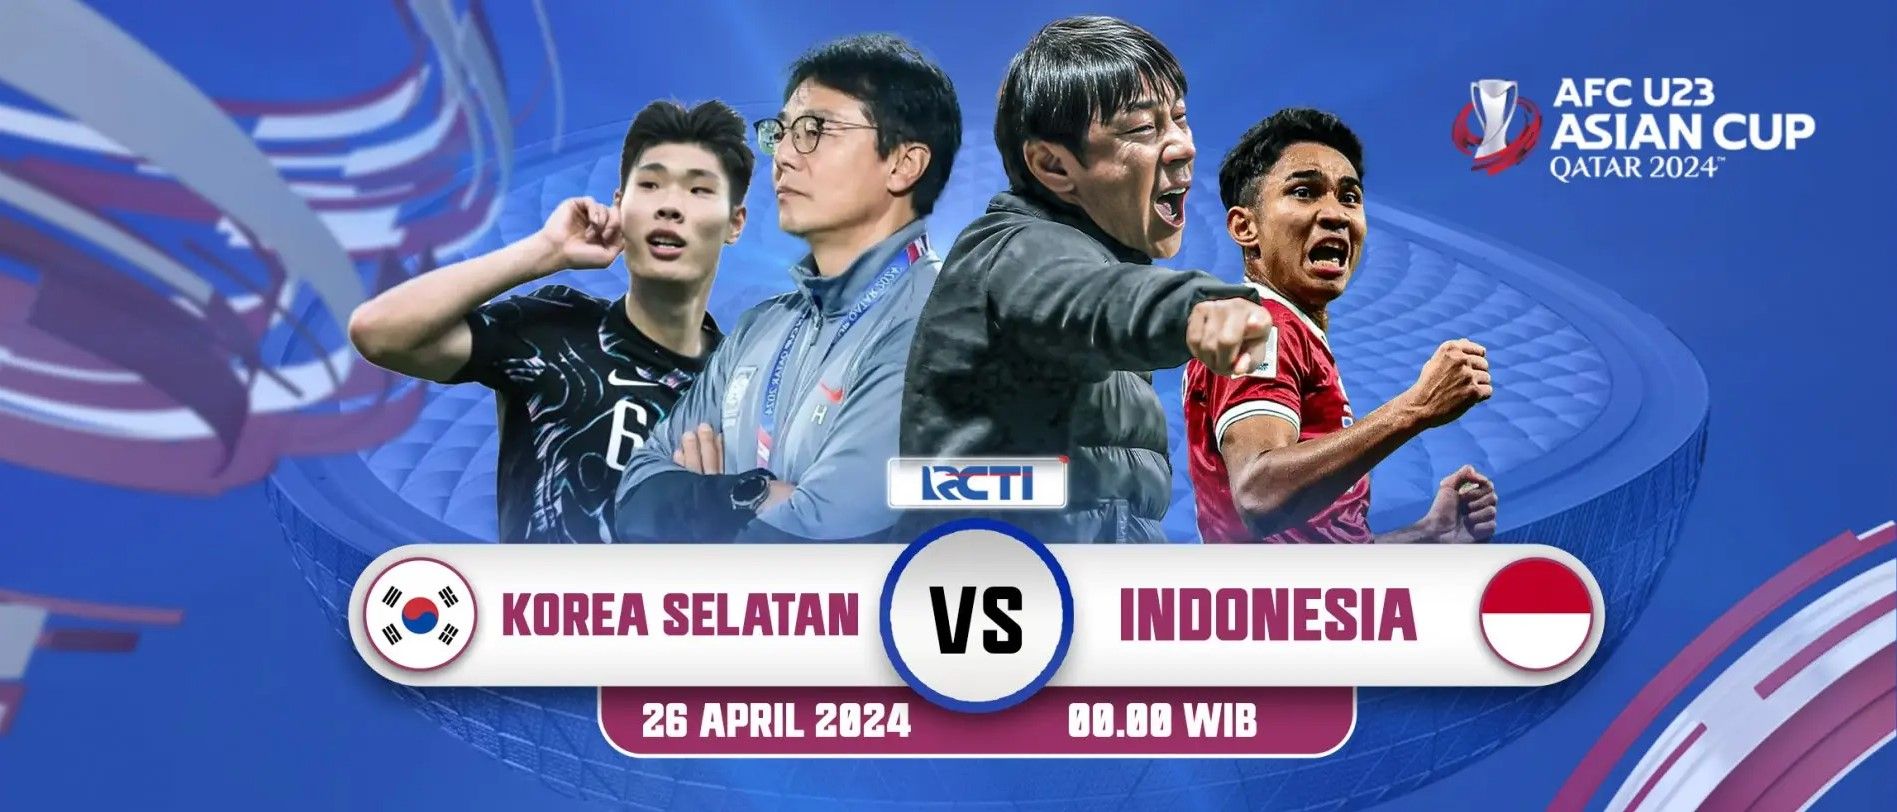 Laga Timnas Indonesia U-23 vs Korea Selatan disiarkan secara langsung di RCTI dan K-Vision. /Tangkapan Layar Website RCTI